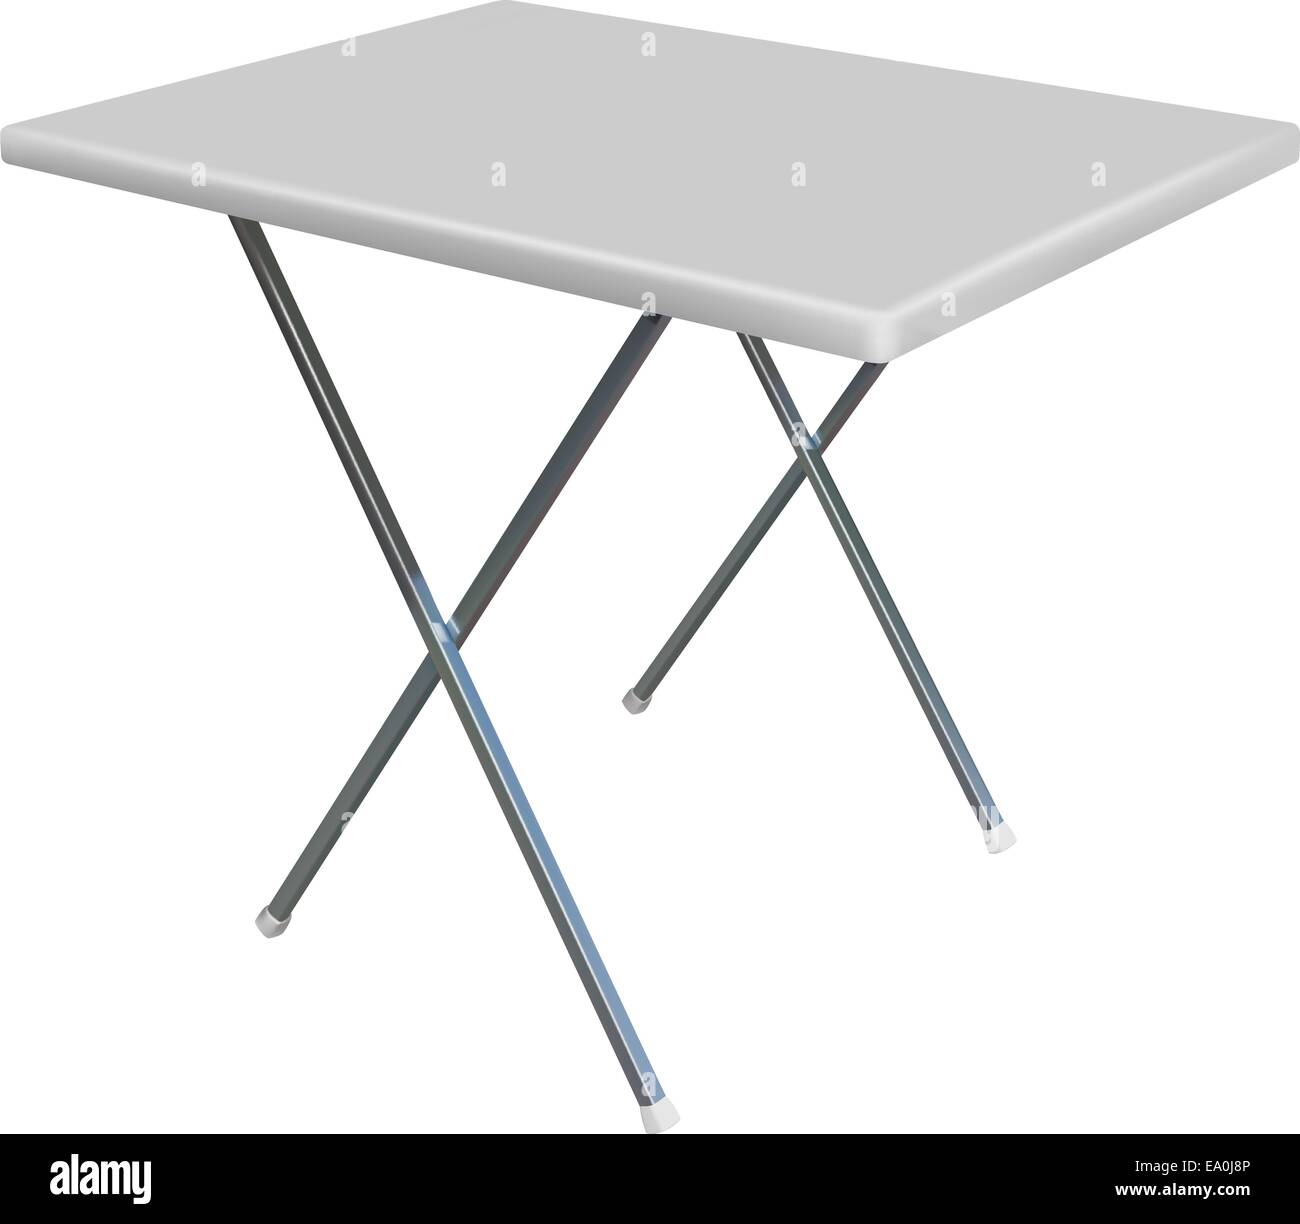 Vettore di plastica convertibile tabella su sfondo bianco Illustrazione Vettoriale